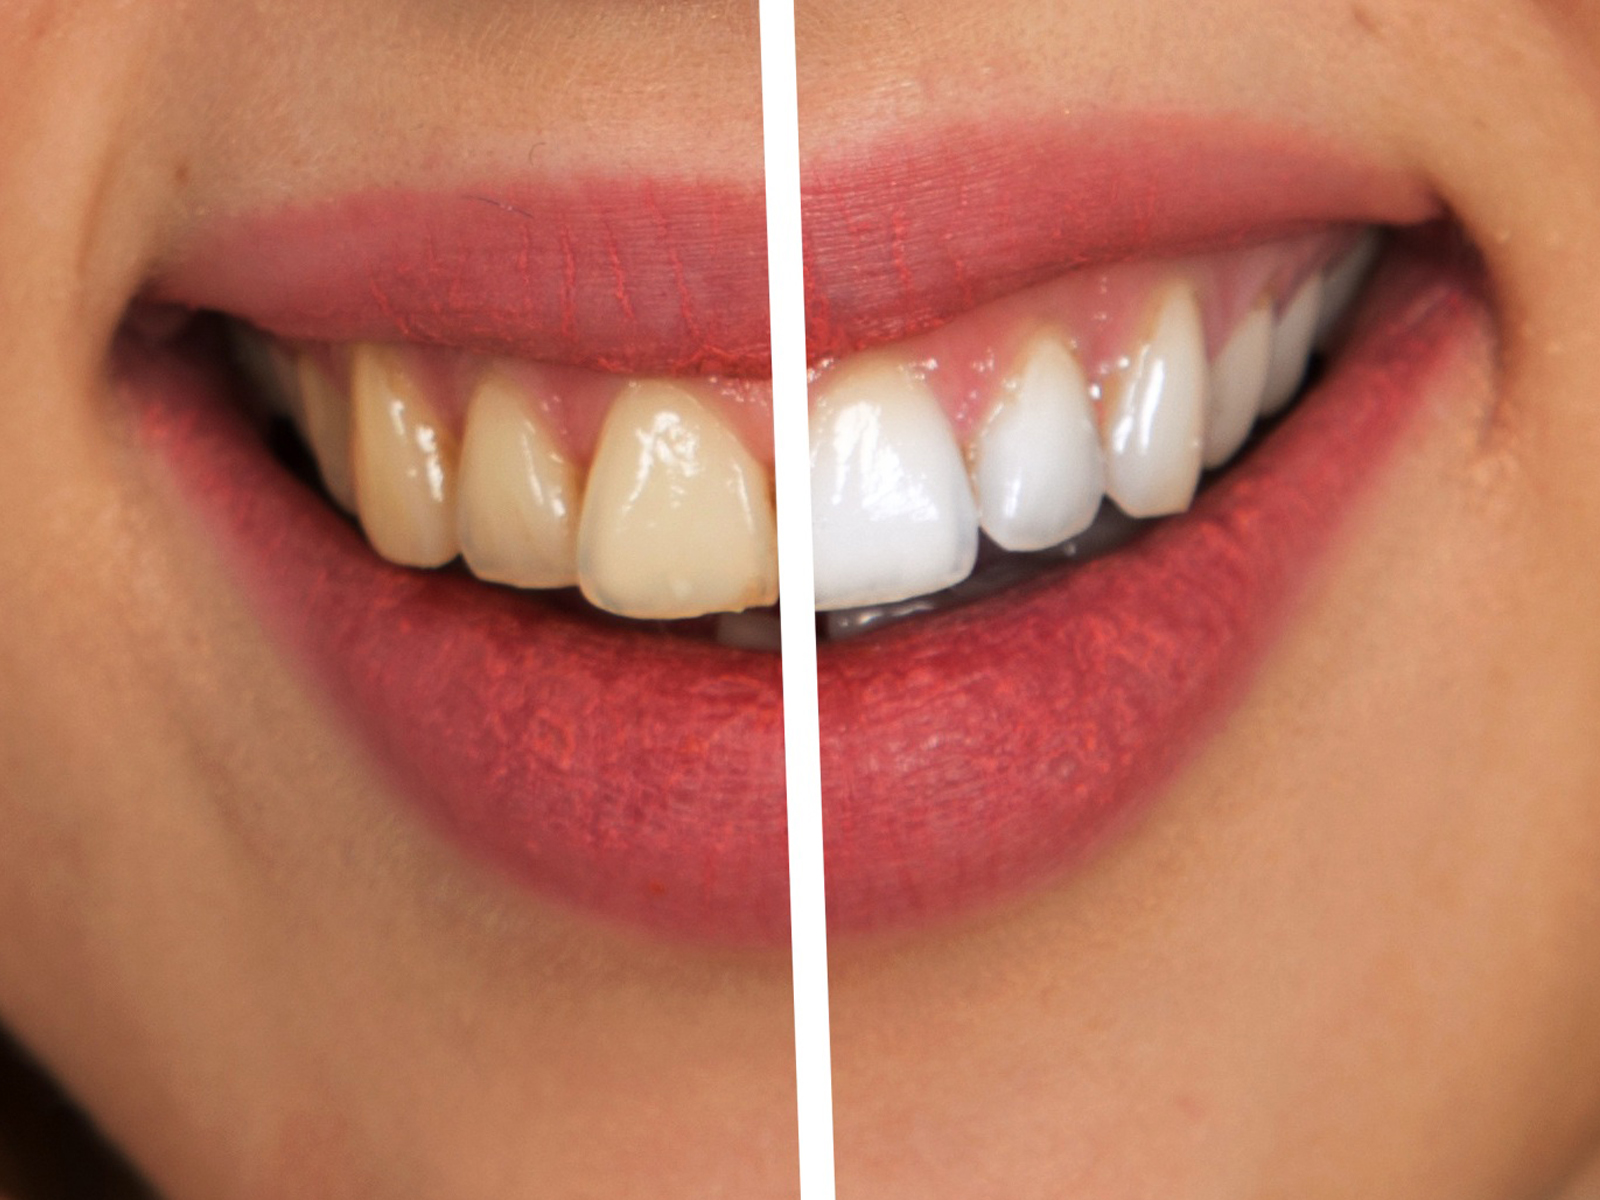 Does hydrogen peroxide whiten teeth?